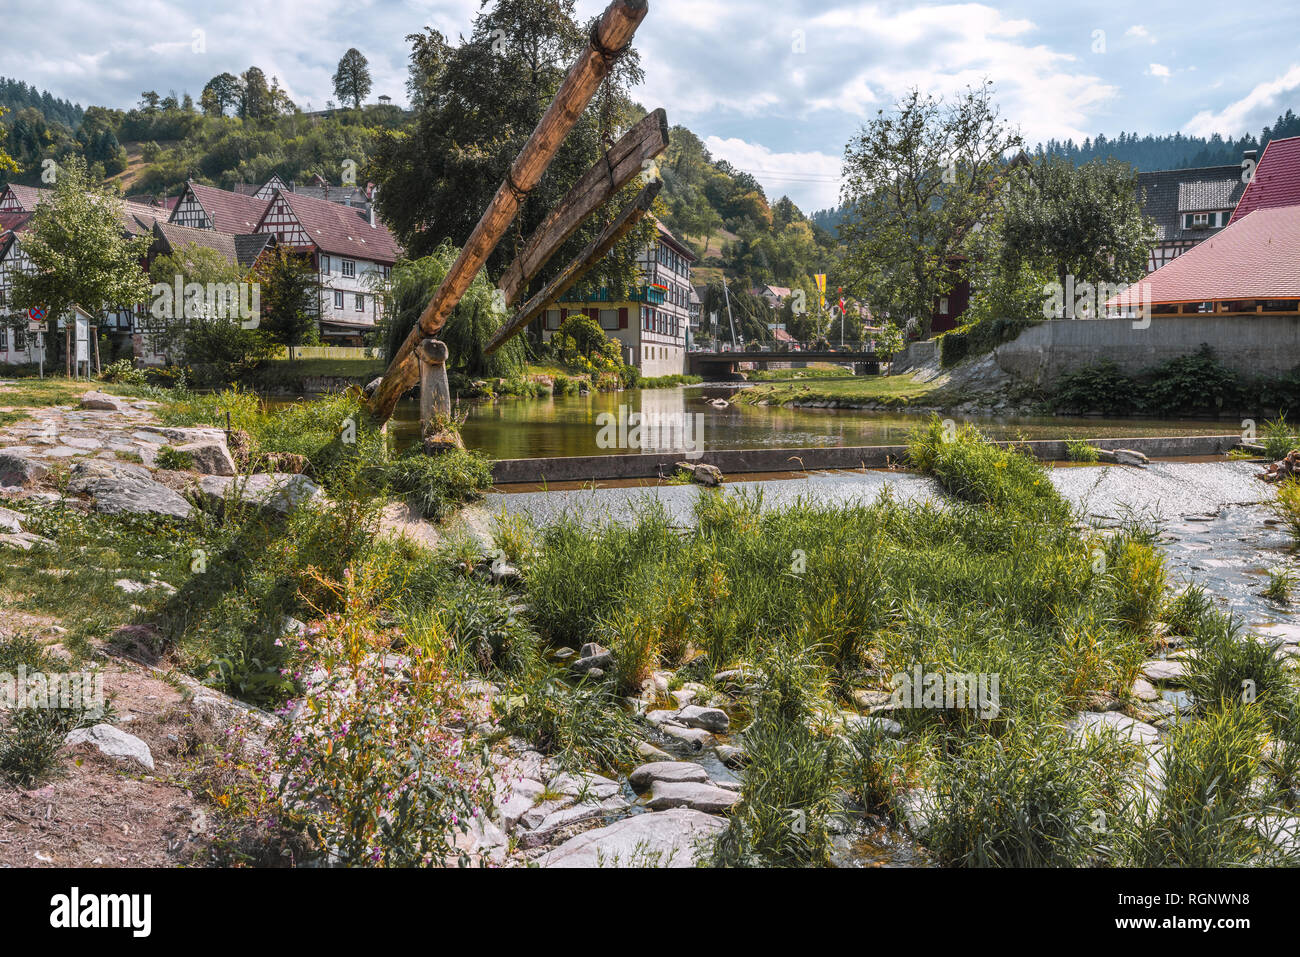 Historische Flut von der Kinzig, Stadt Schiltach, Schwarzwald, Deutschland, Gamben Bau wurde verwendet, Transport von Schnittholz zu schweben. Stockfoto